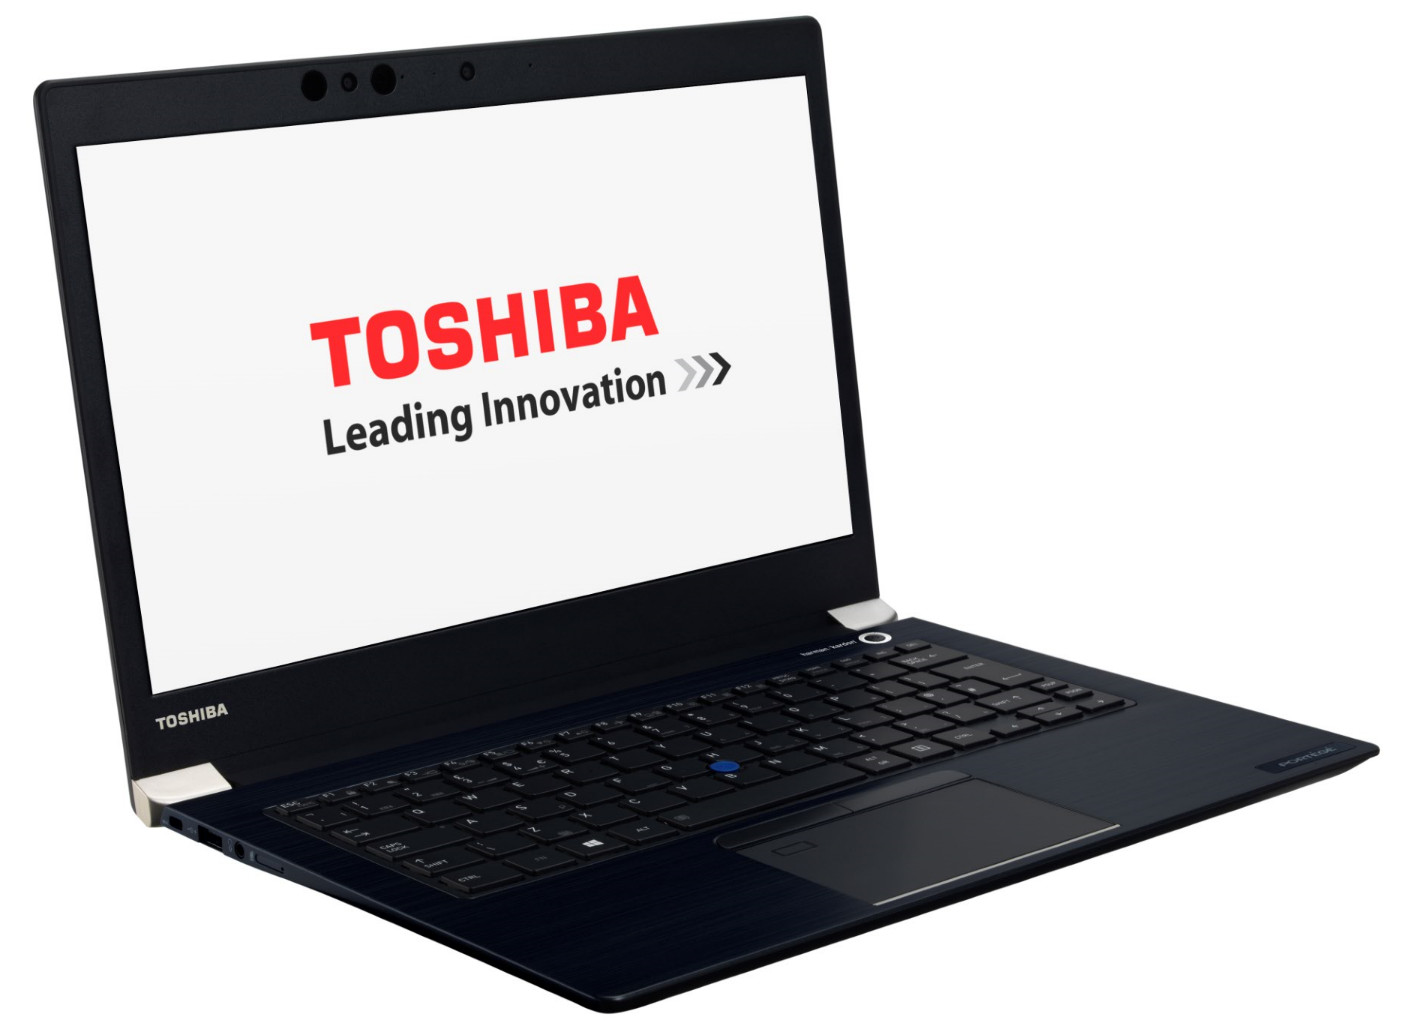 Toshiba lanza nuevos mini ordenadores portátiles de alta calidad